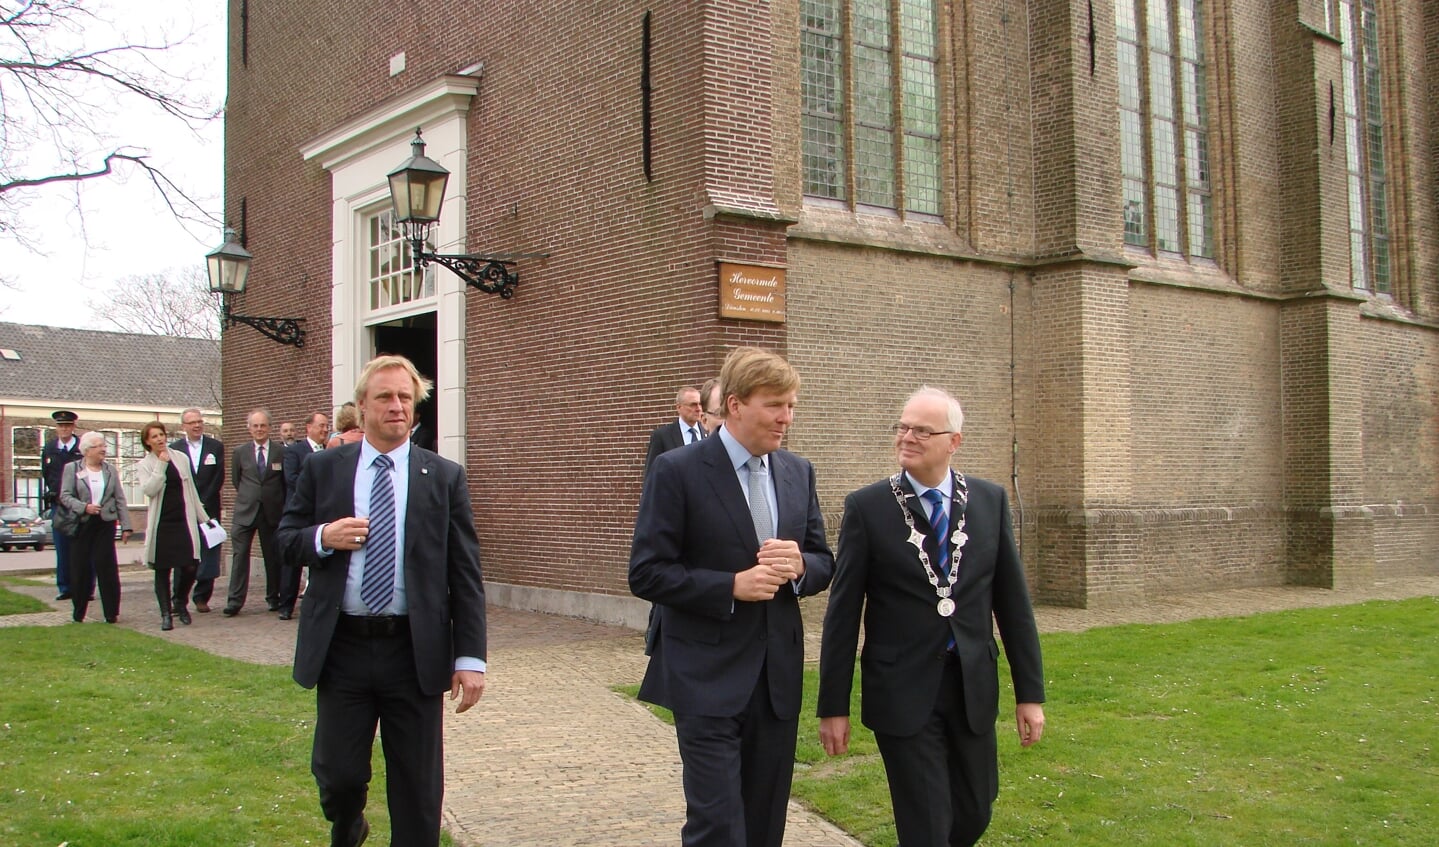 Burgemeester Jan van Belzen met (toen nog) kroonprins Willem-Alexander in maart 2012.